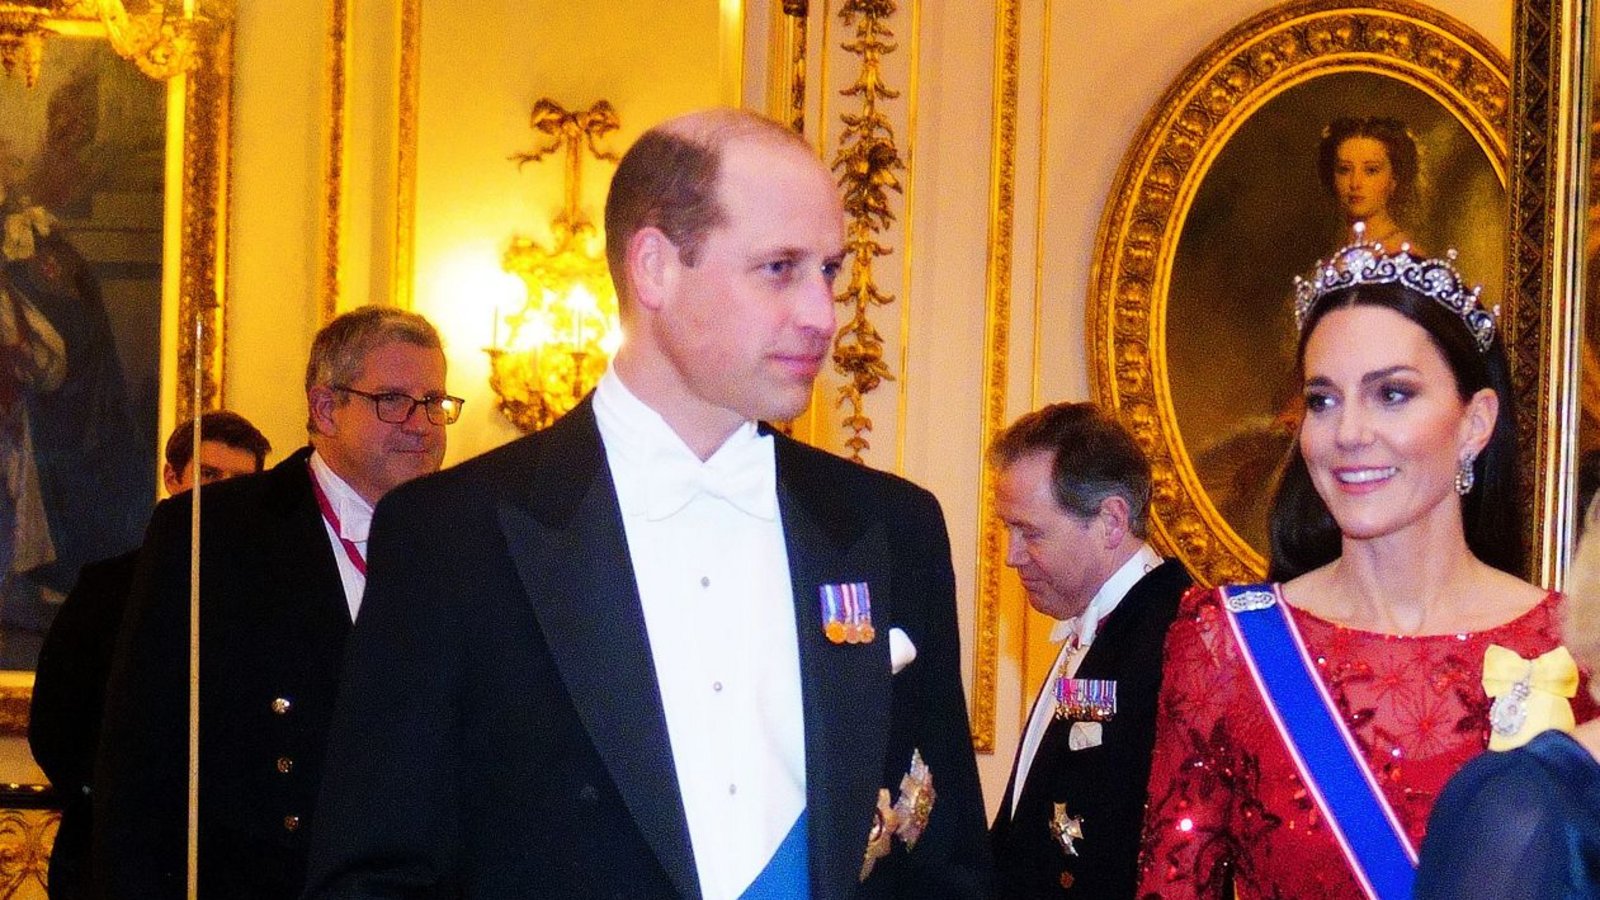 Mit dabei waren auch die Wales’: Prinz William und Prinzessin Kate.Foto: dpa/Victoria Jones